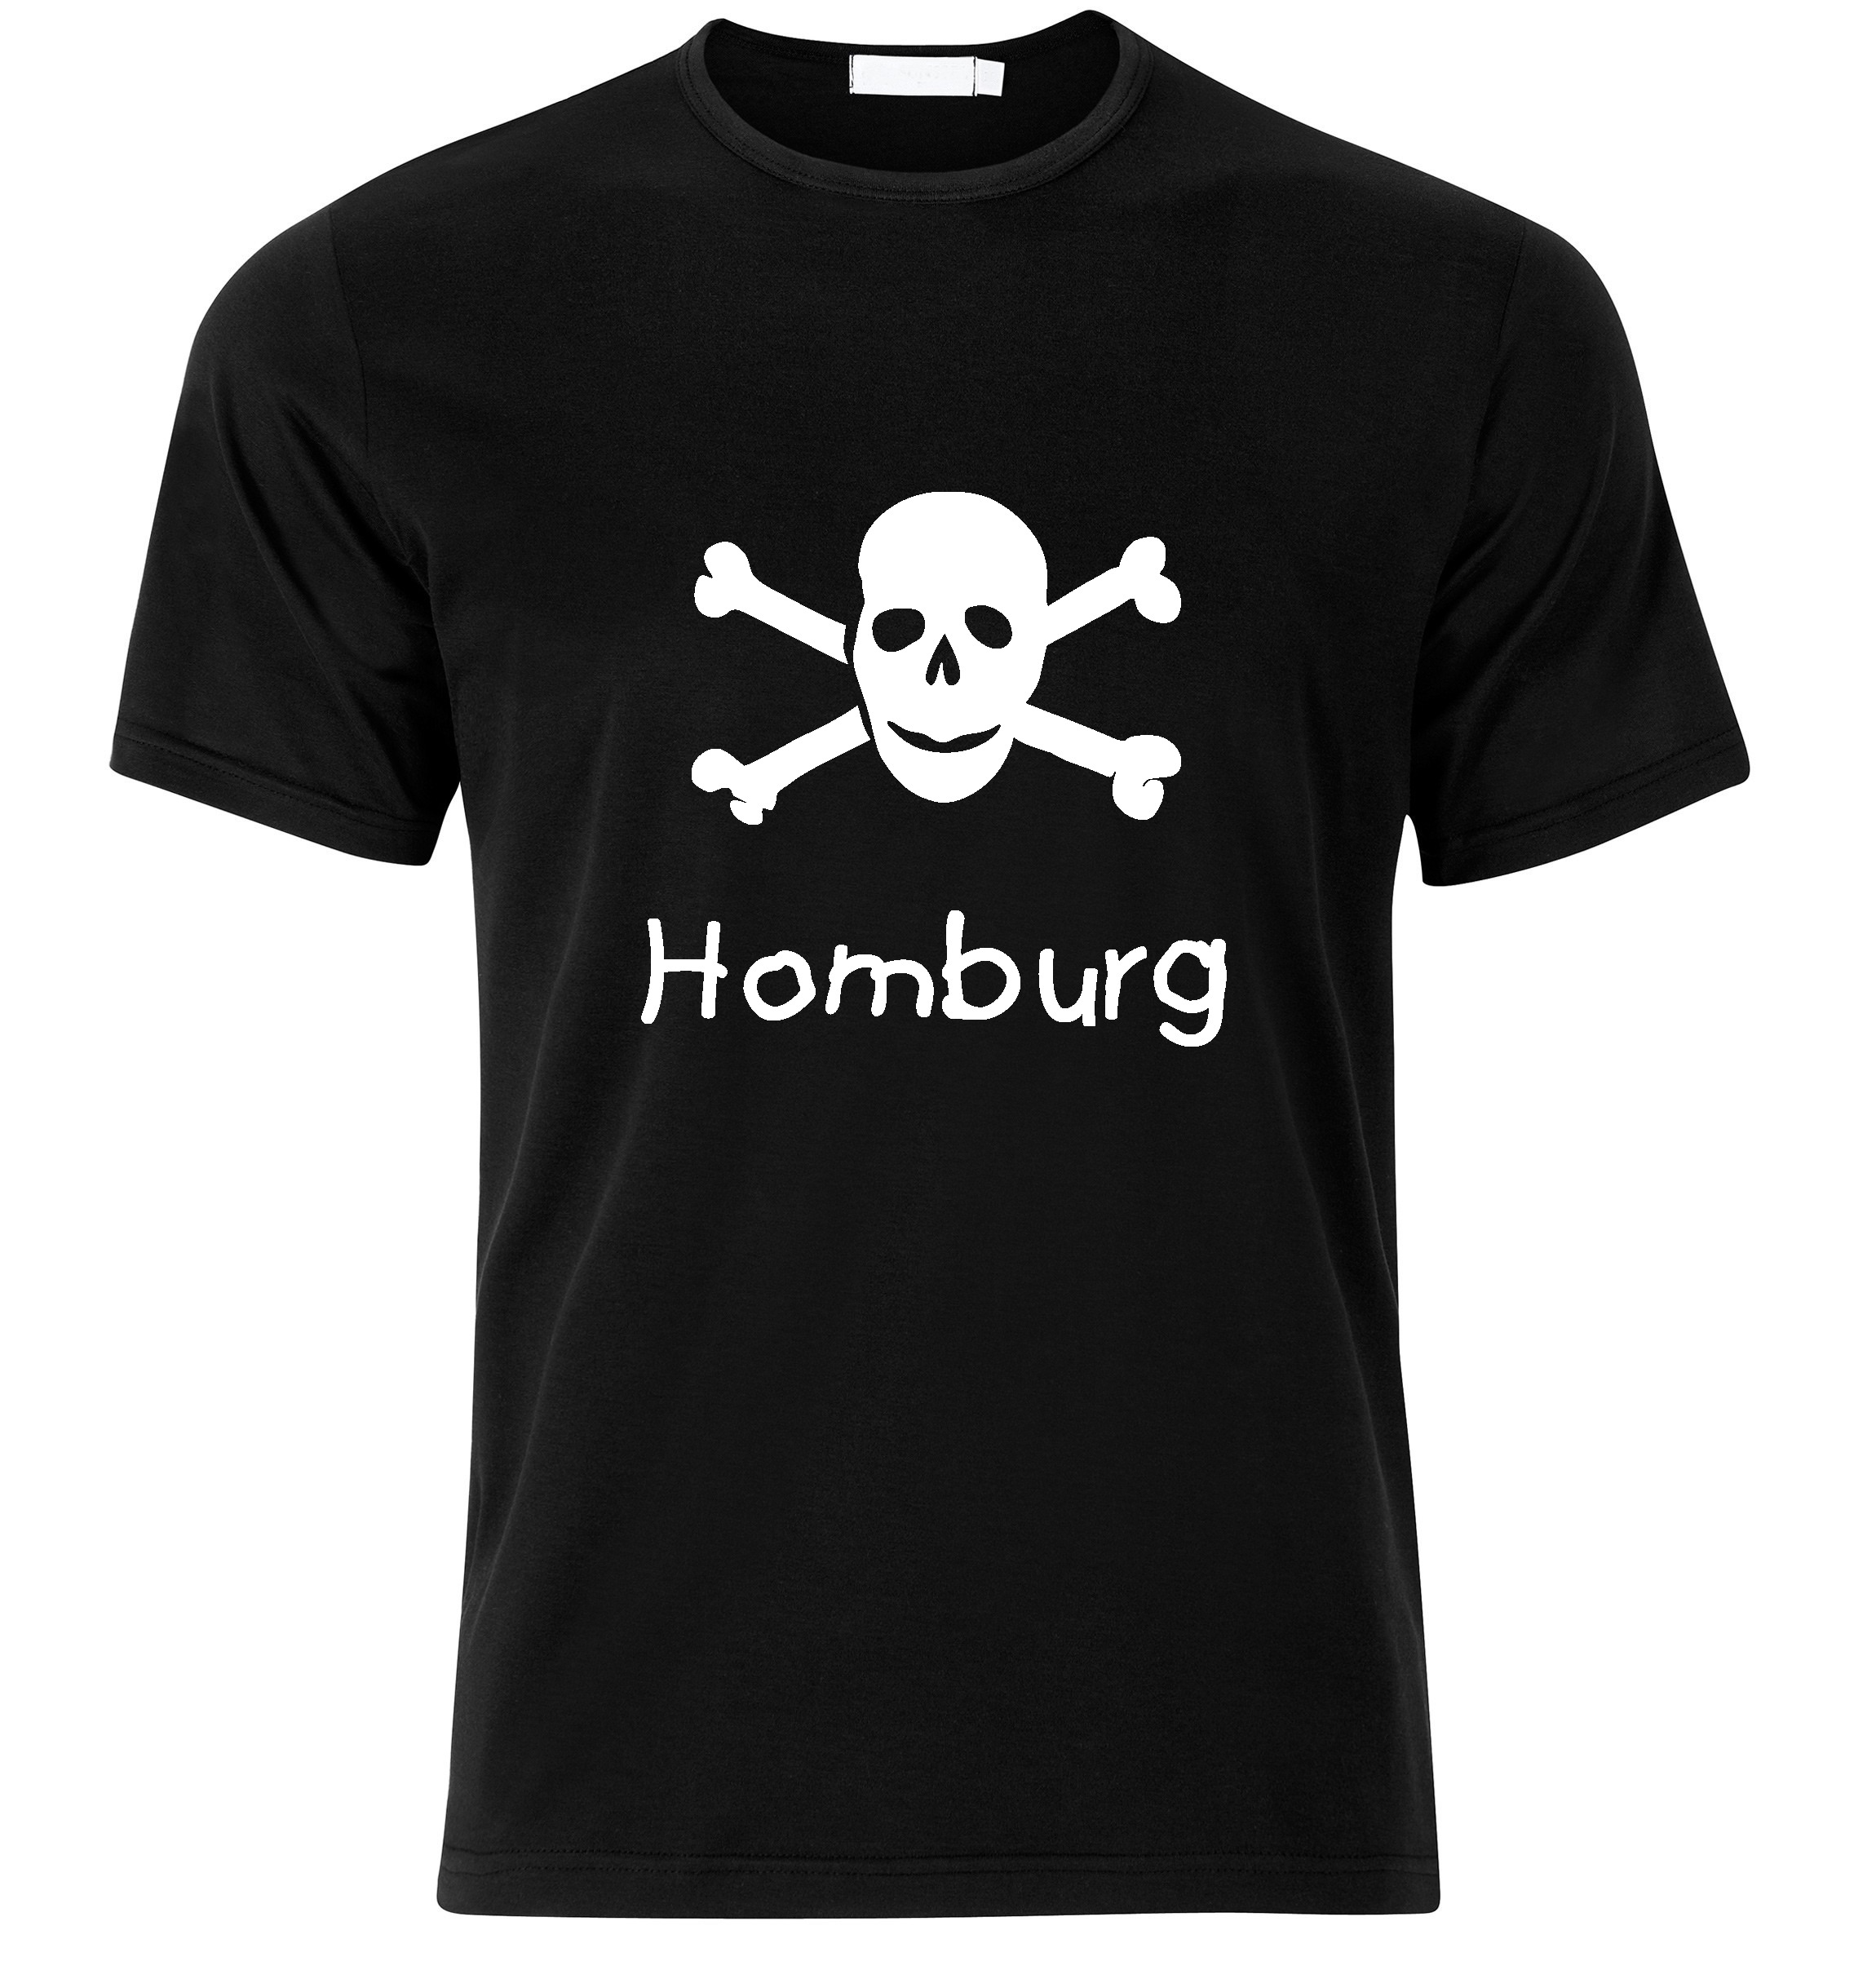 T-Shirt Homburg Jolly Roger, Totenkopf